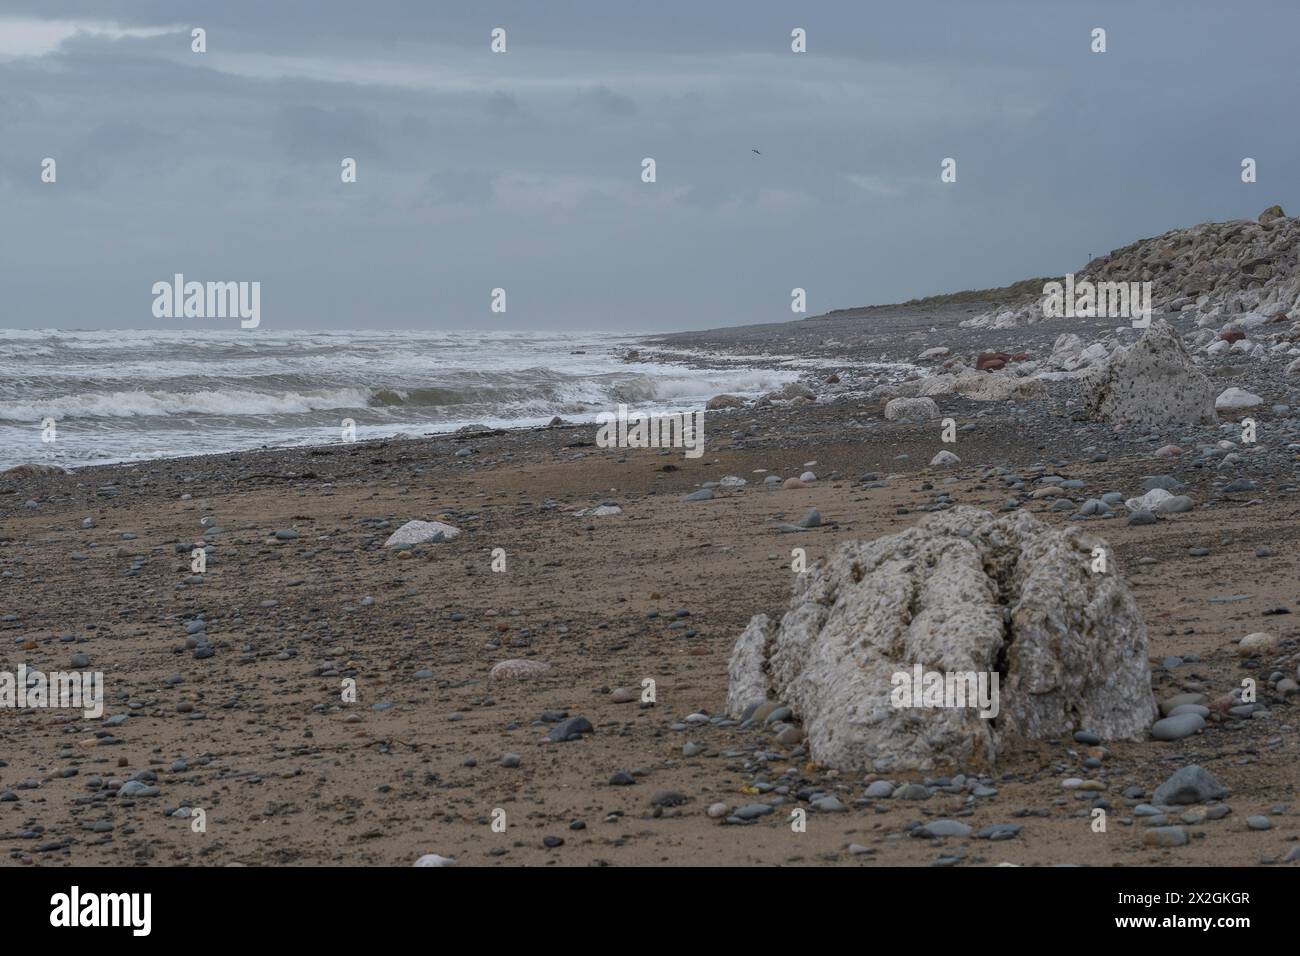 Rochers blancs sur une plage pierreuse sous le ciel gris avec des vagues roulantes d'eau vive, paysage marin silencieux atmosphérique Banque D'Images